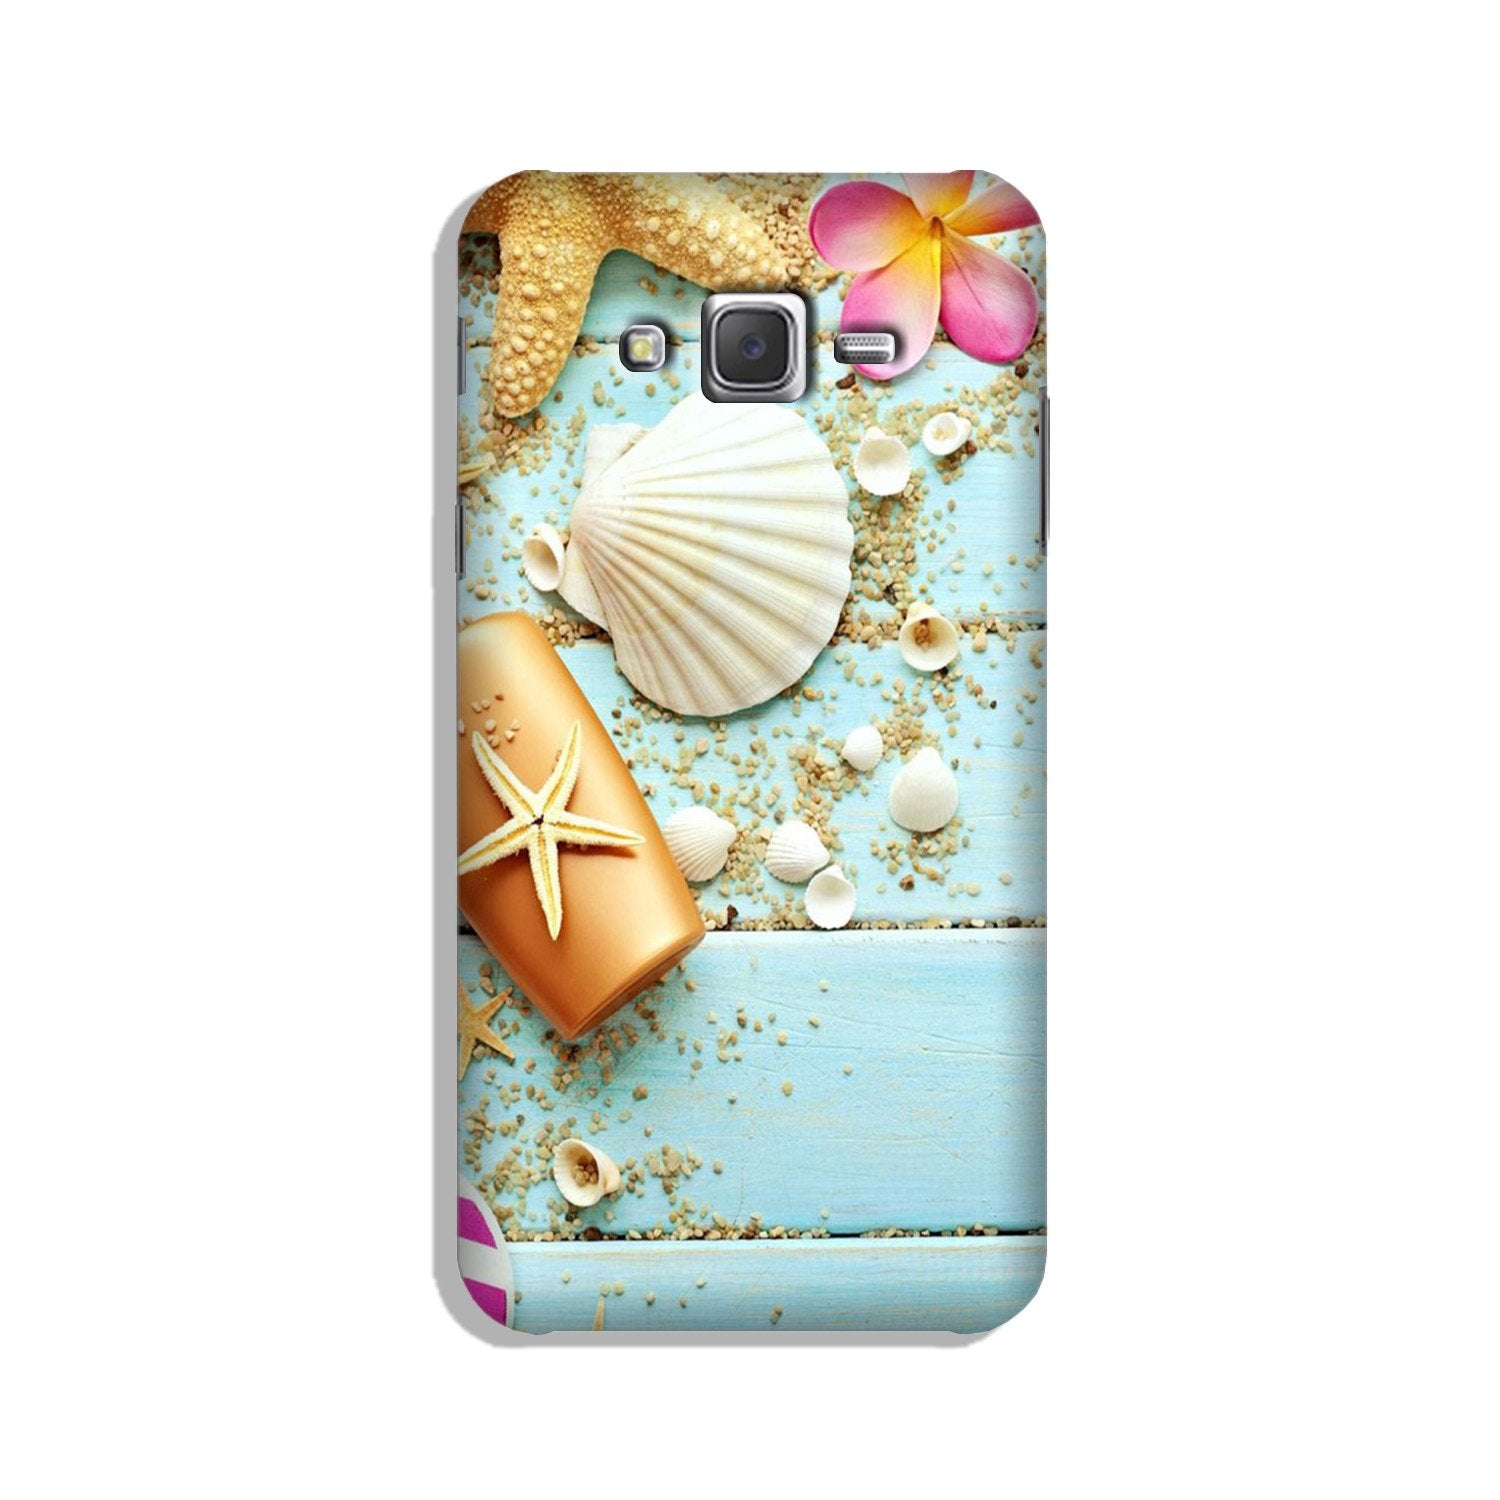 Sea Shells Case for Galaxy J3 (2015)